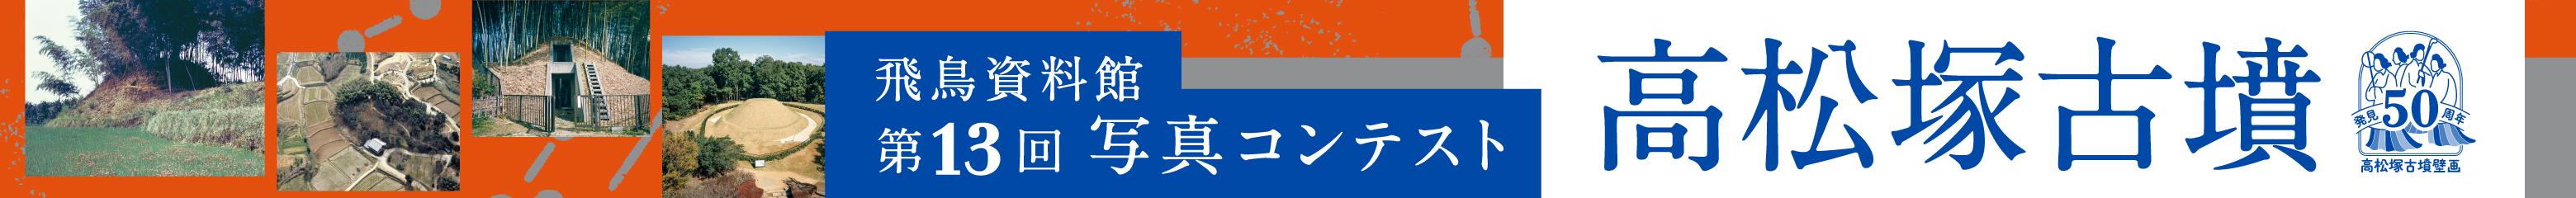 takamatsu2022_banner1040_80.jpg